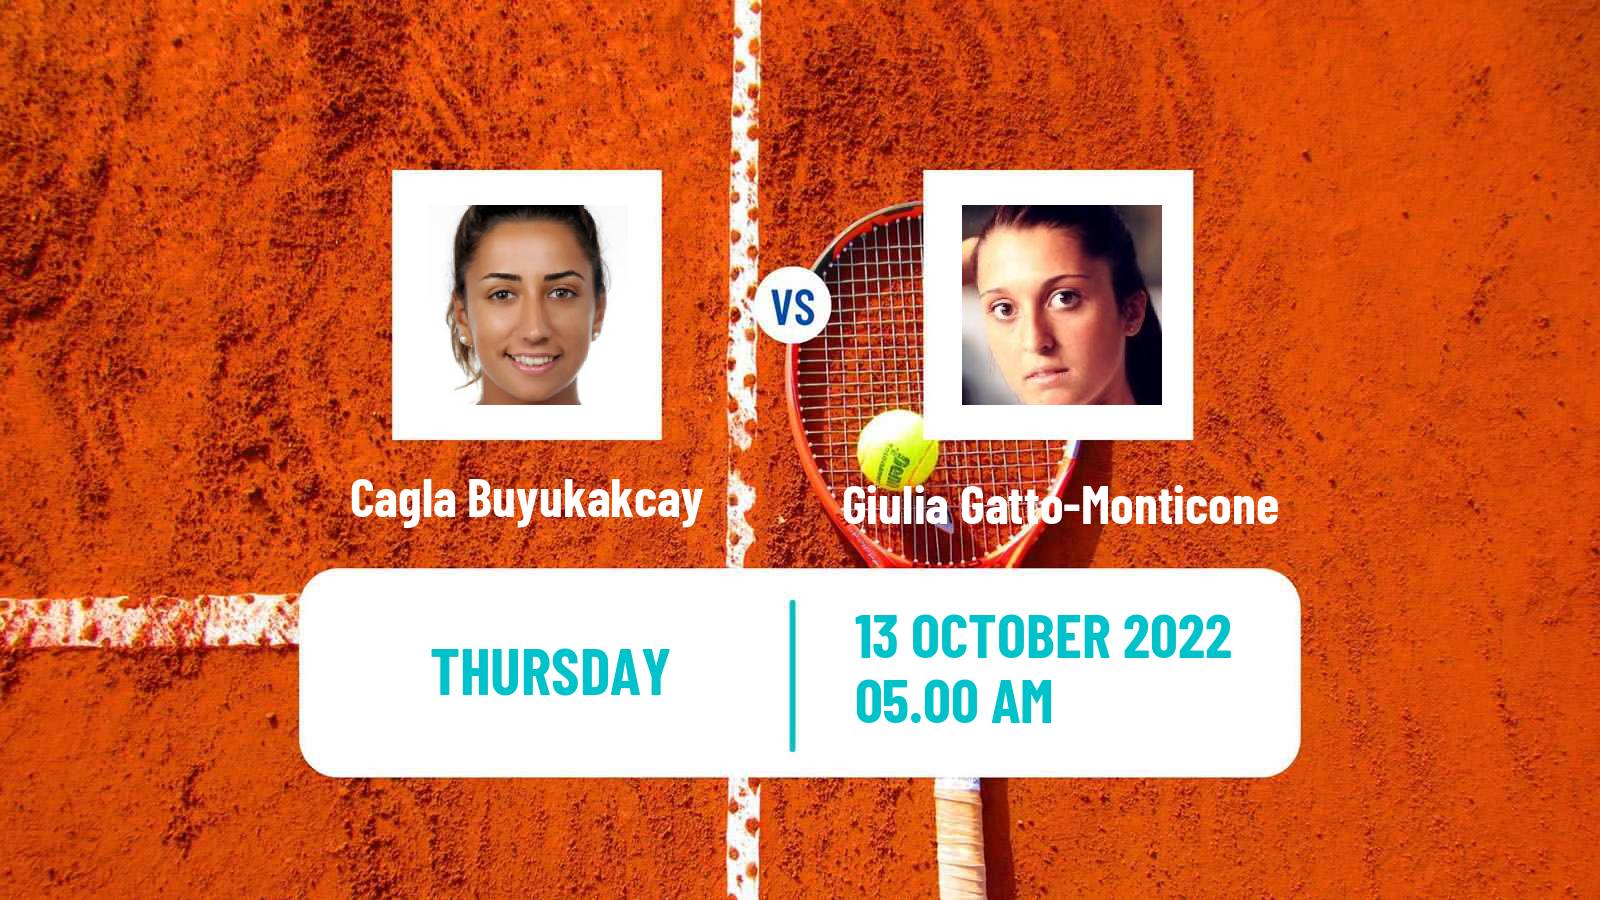 Tennis ITF Tournaments Cagla Buyukakcay - Giulia Gatto-Monticone